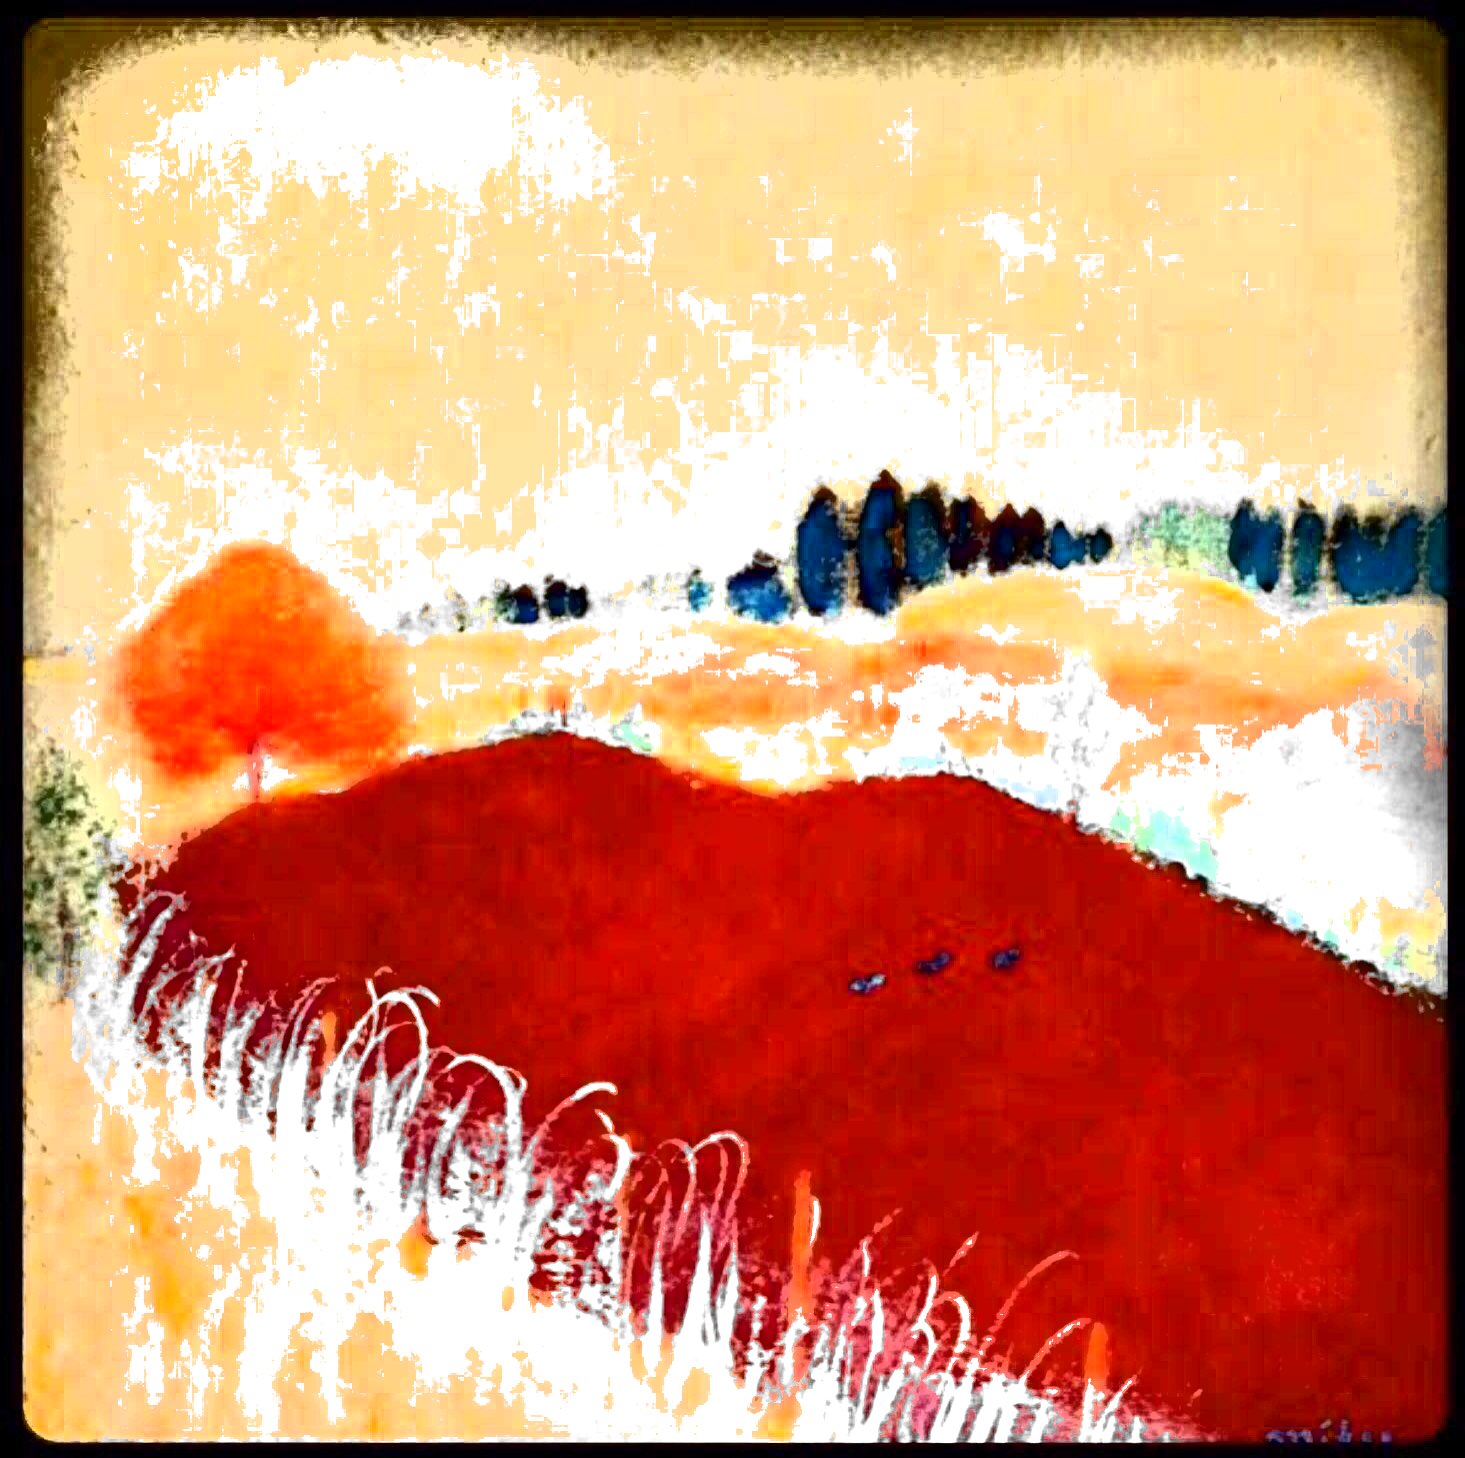 壁画風 阿蘇の風景 画材:鉱物顔料 (画像は画像処理されています)